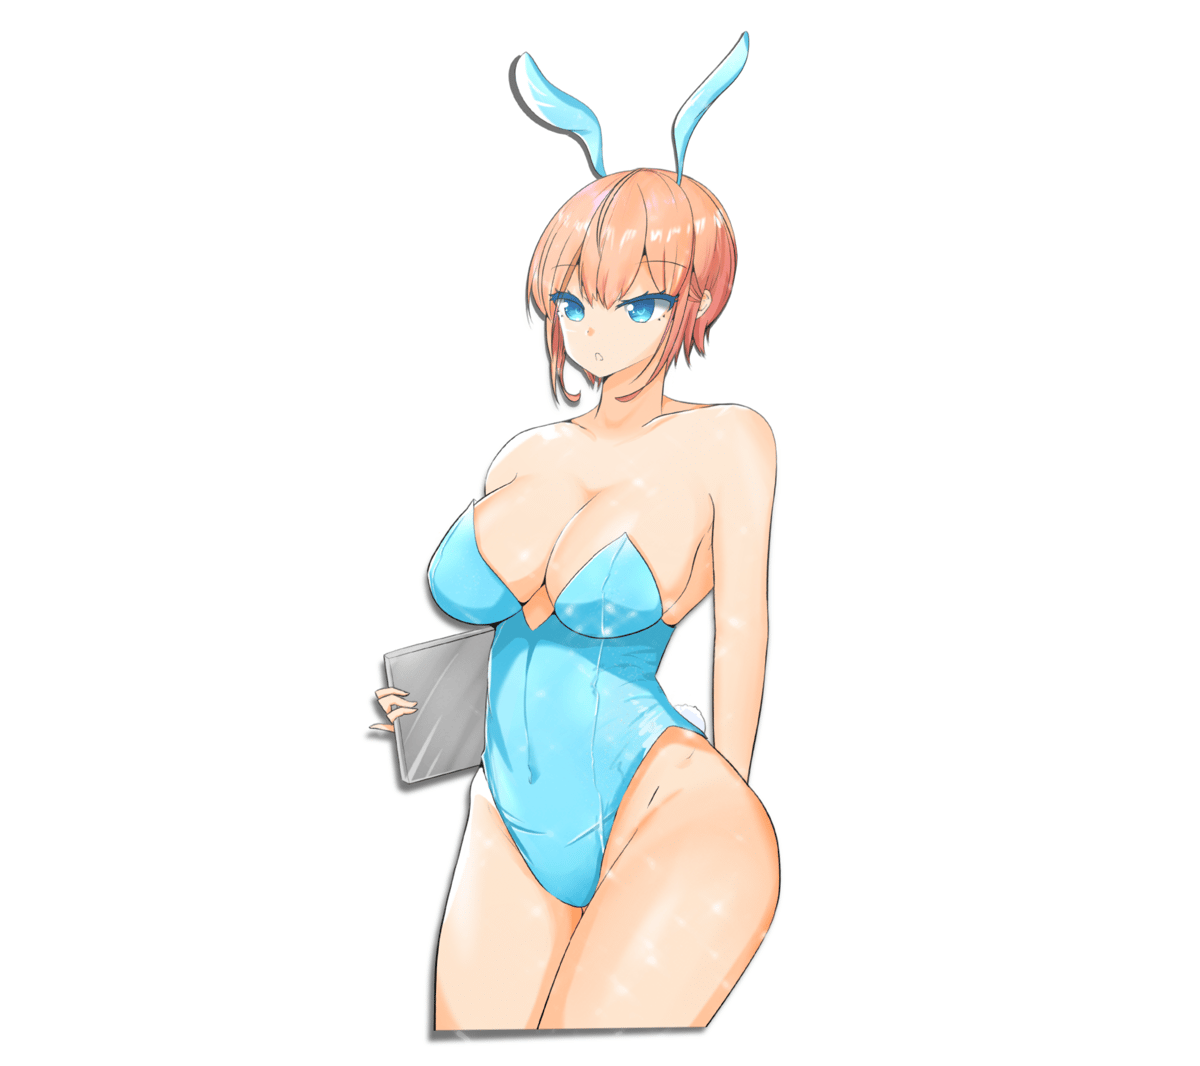 Image of Ichika Bunny suit kisscut